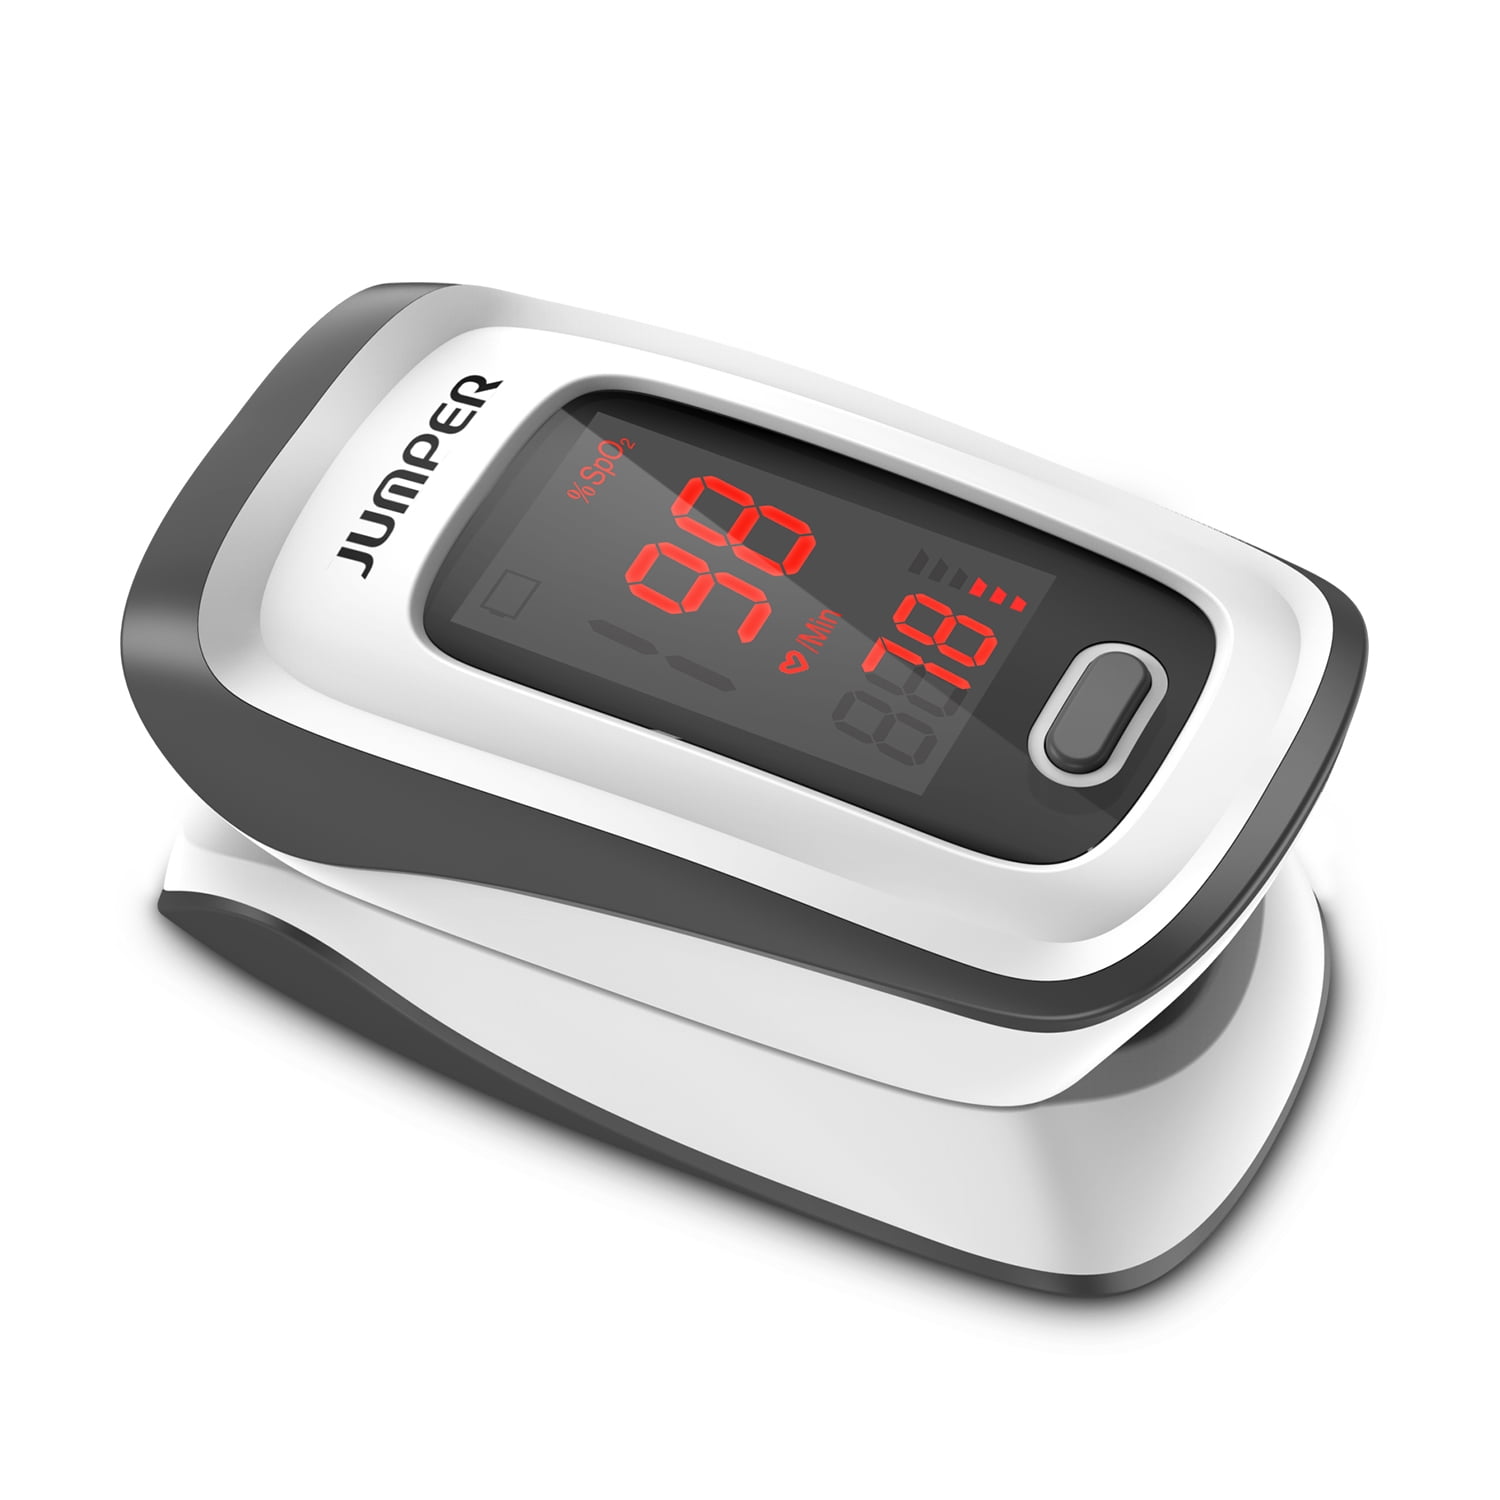 goedkeuren nabootsen haakje Jumper Fingertip Pulse Oximeter Heart Rate Health Monitor Blood Oxygen Meter  with Lanyard & Batteries - Walmart.com